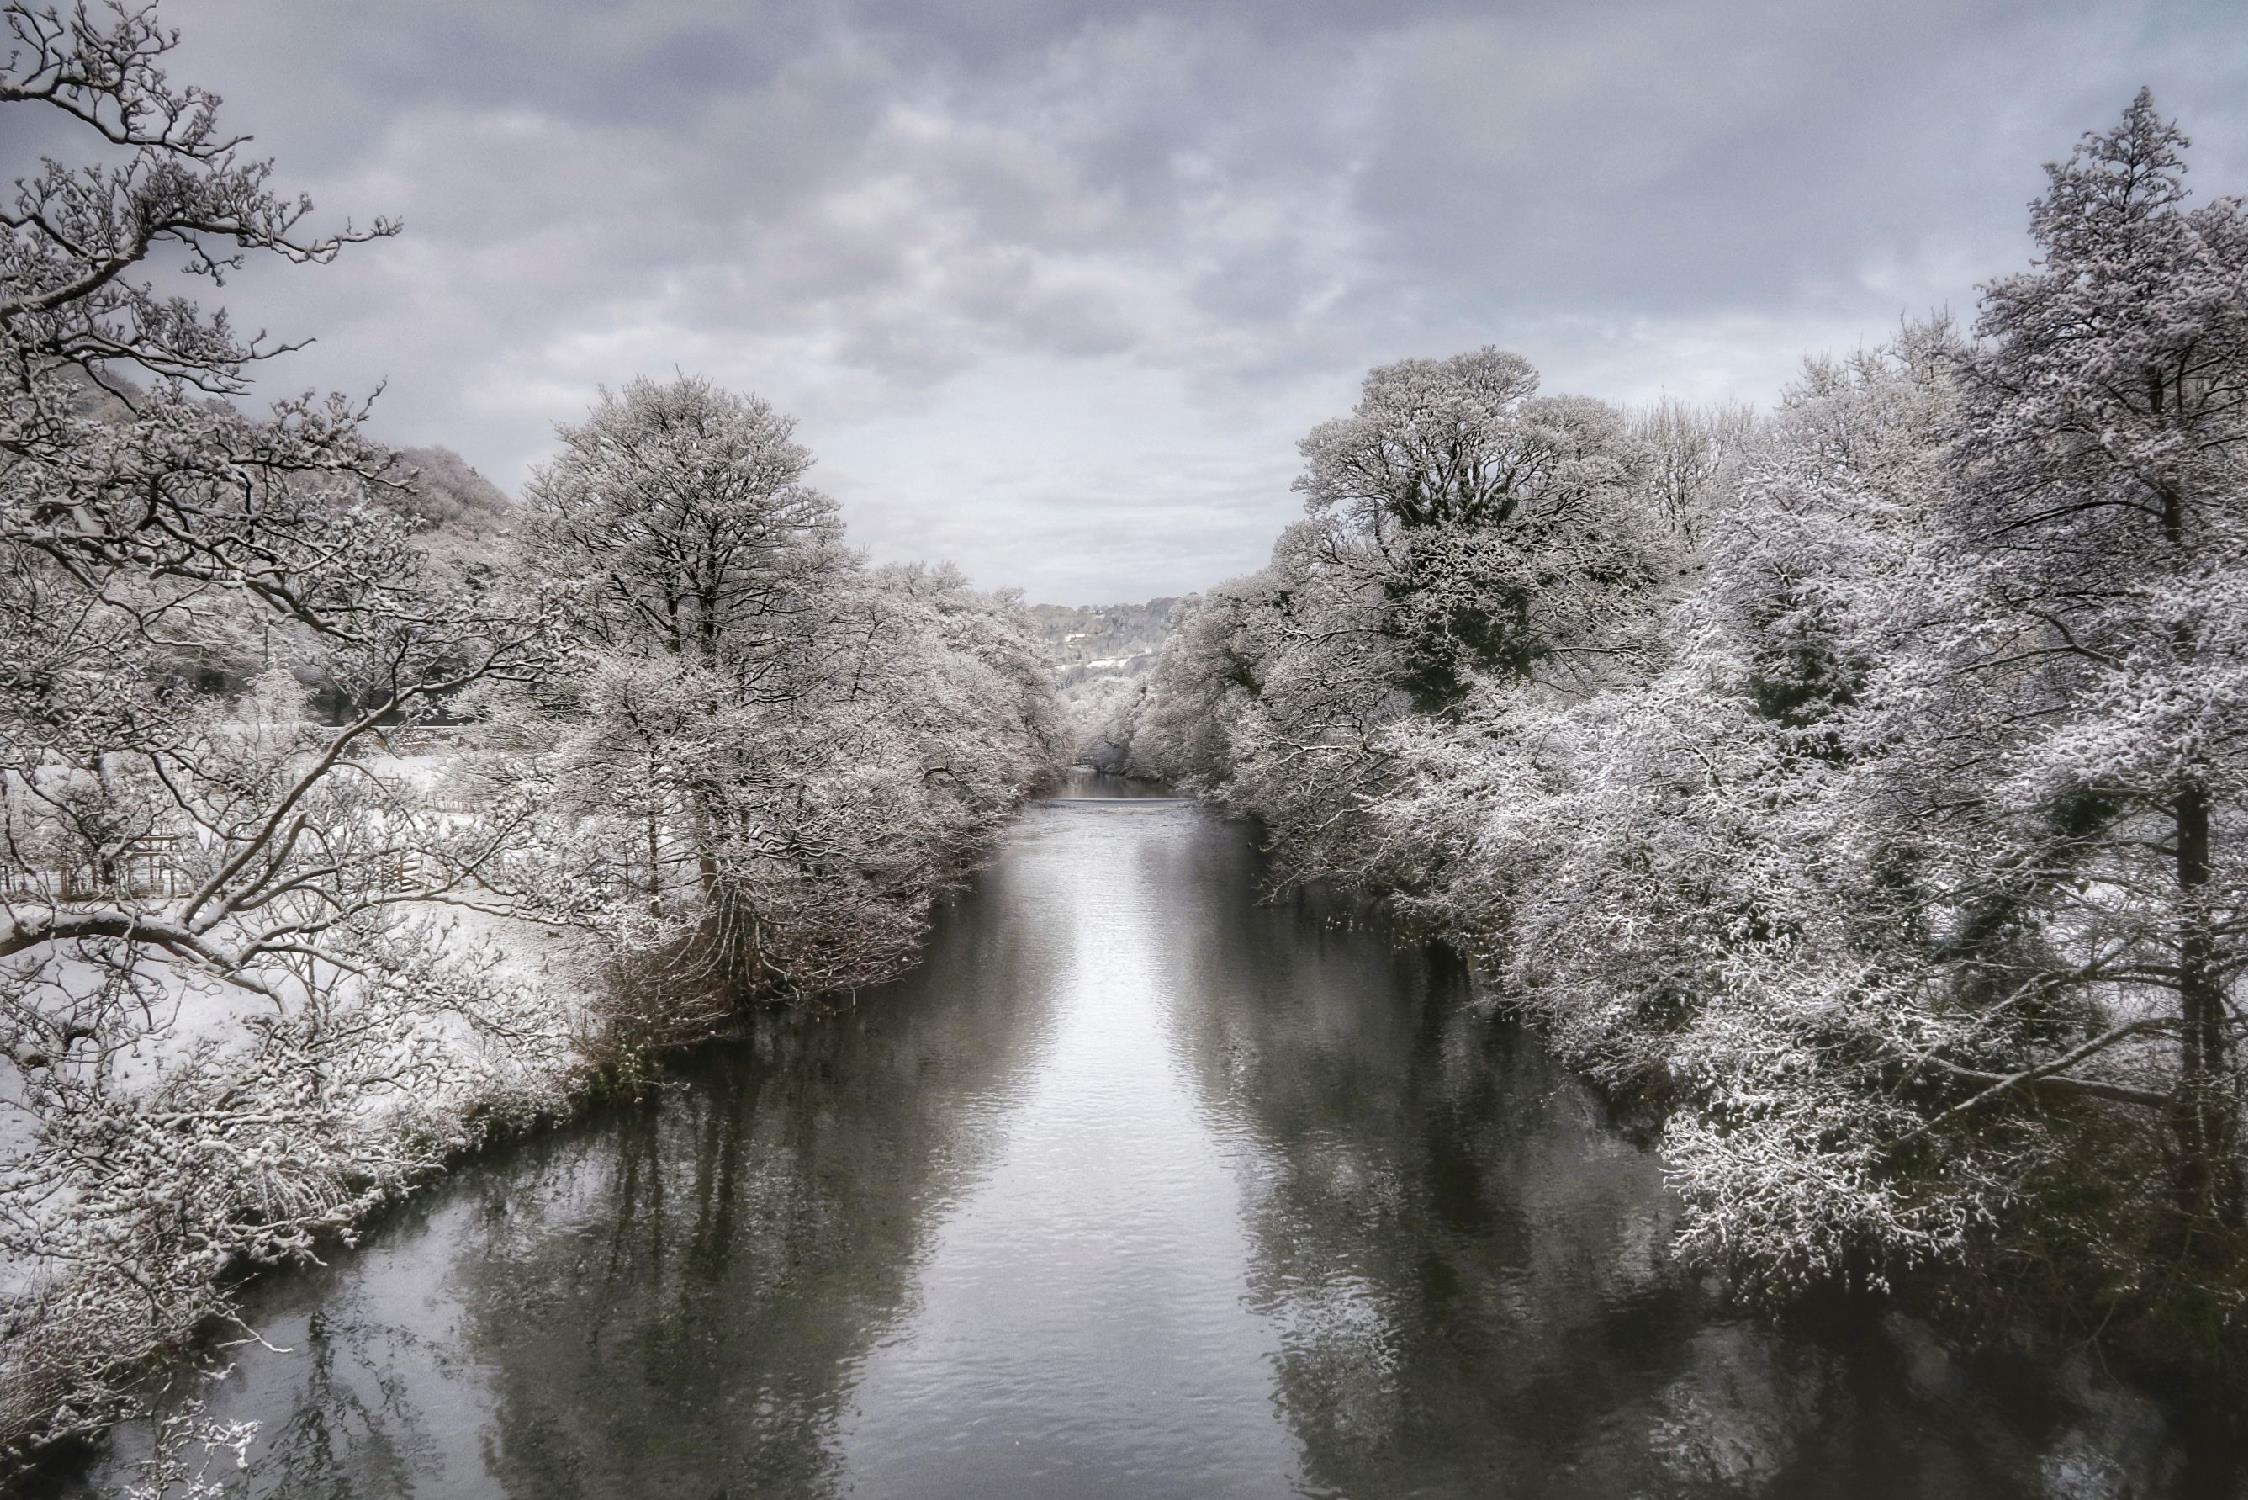 The River Derwent in winter